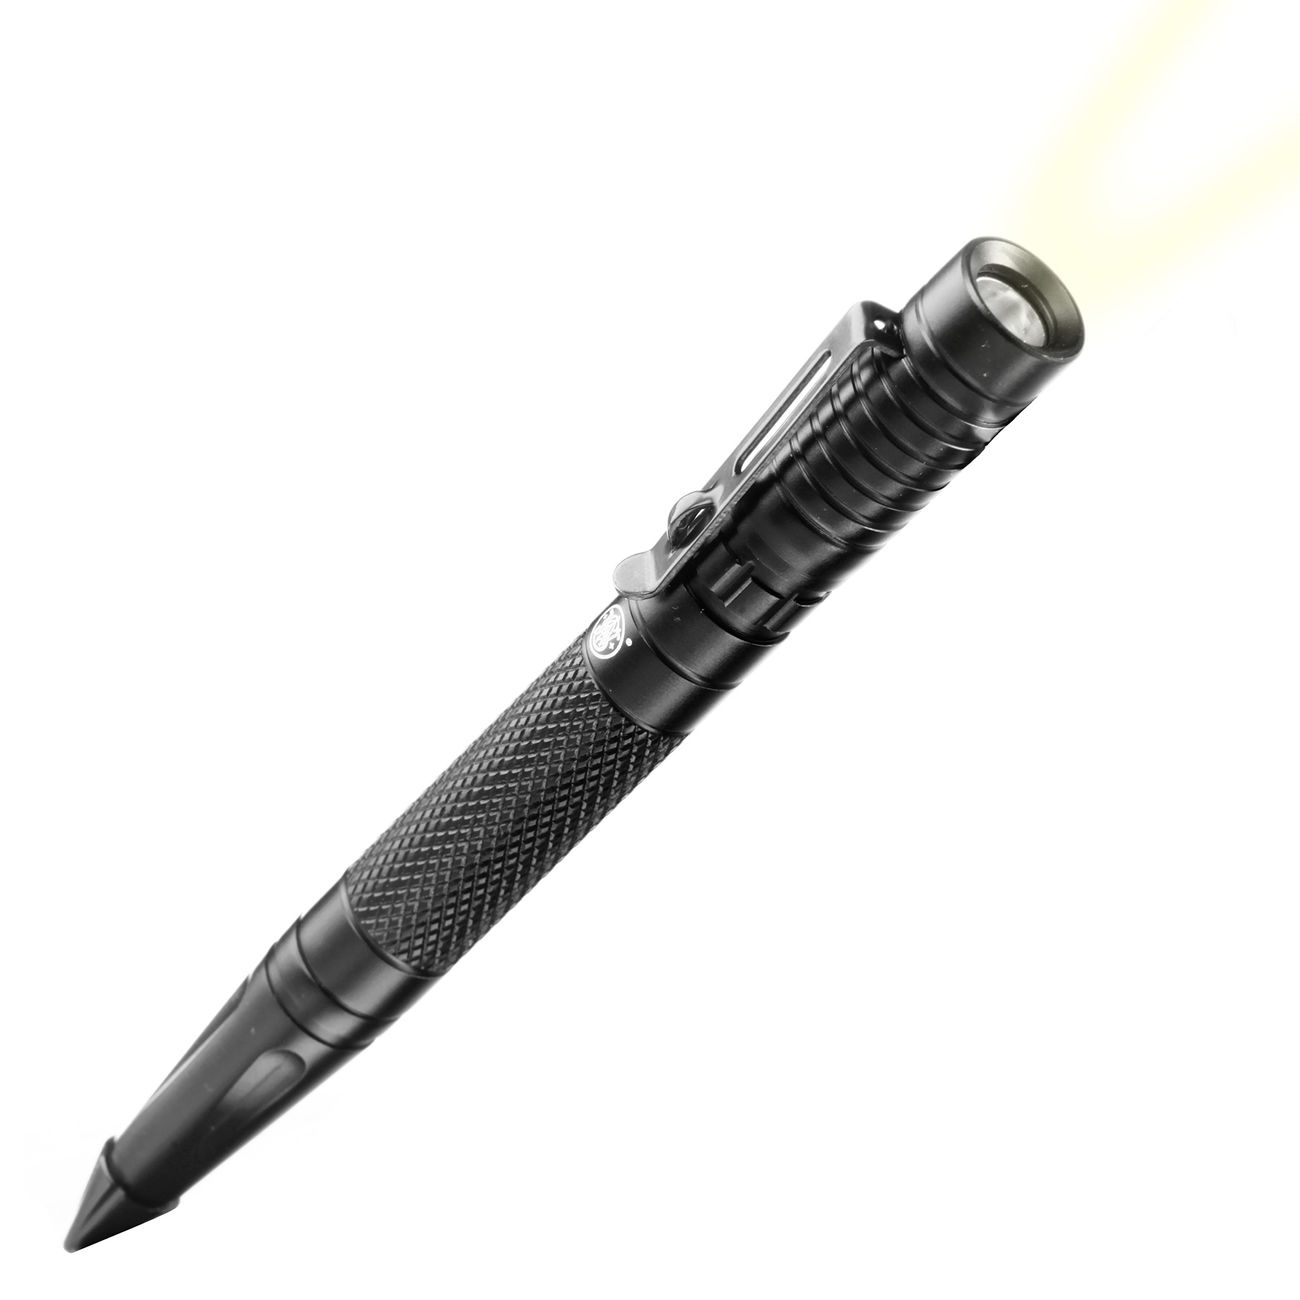 Smith & Wesson Tactical Pen Kubotan mit LED Lampe Bild 1